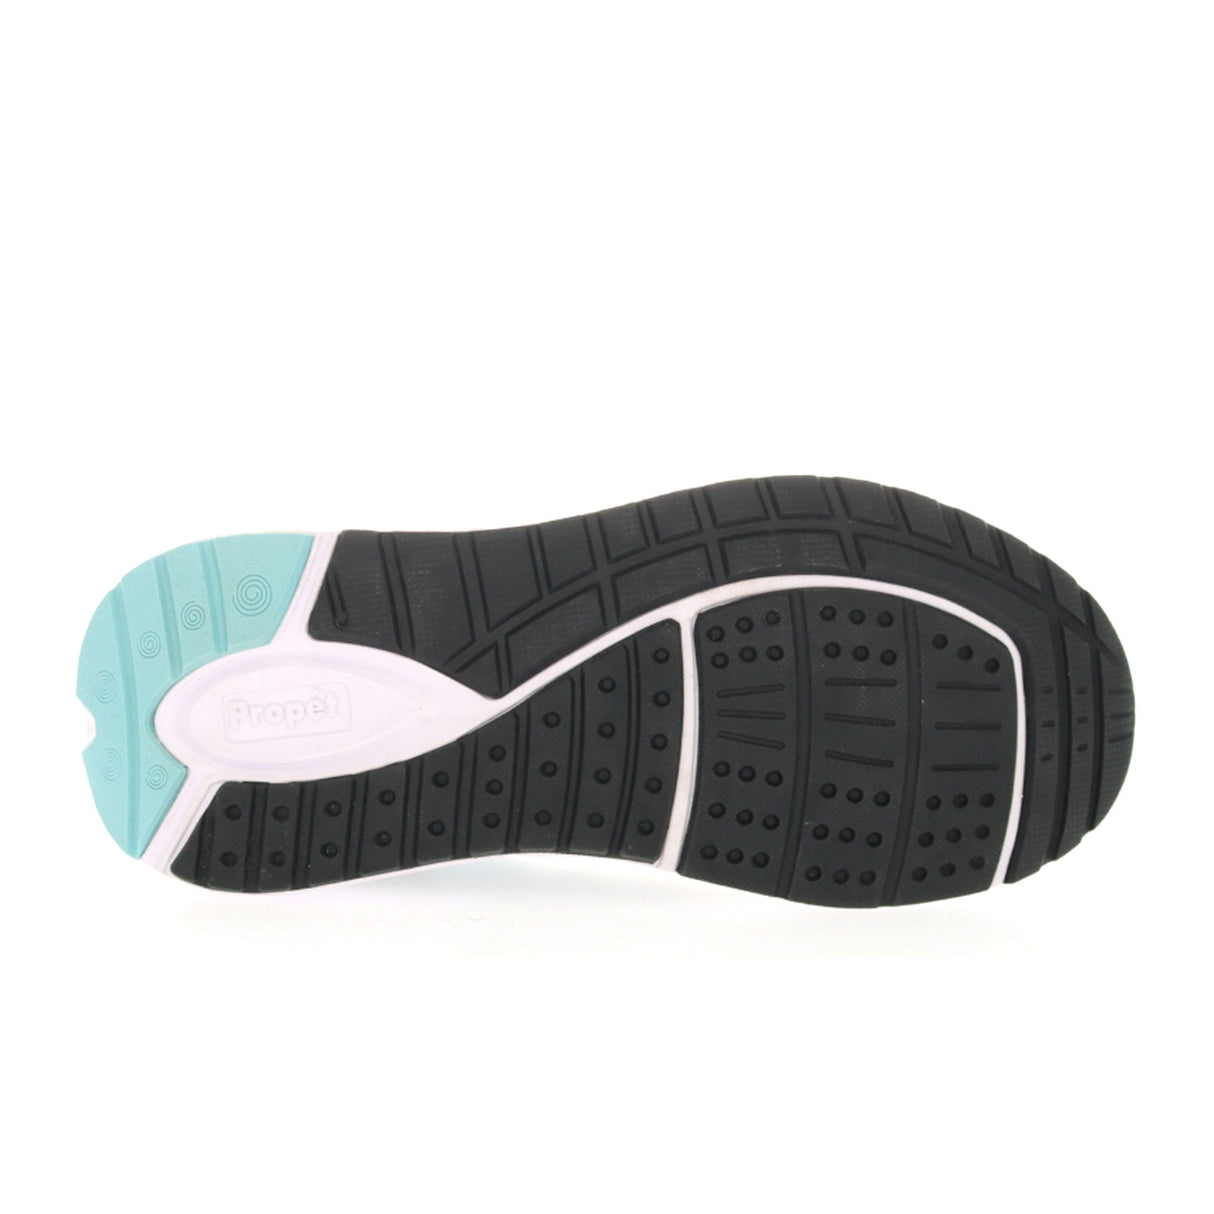 Propet Ultra Walking Shoe (Women) - Grey/Mint Athletic - Walking - The Heel Shoe Fitters